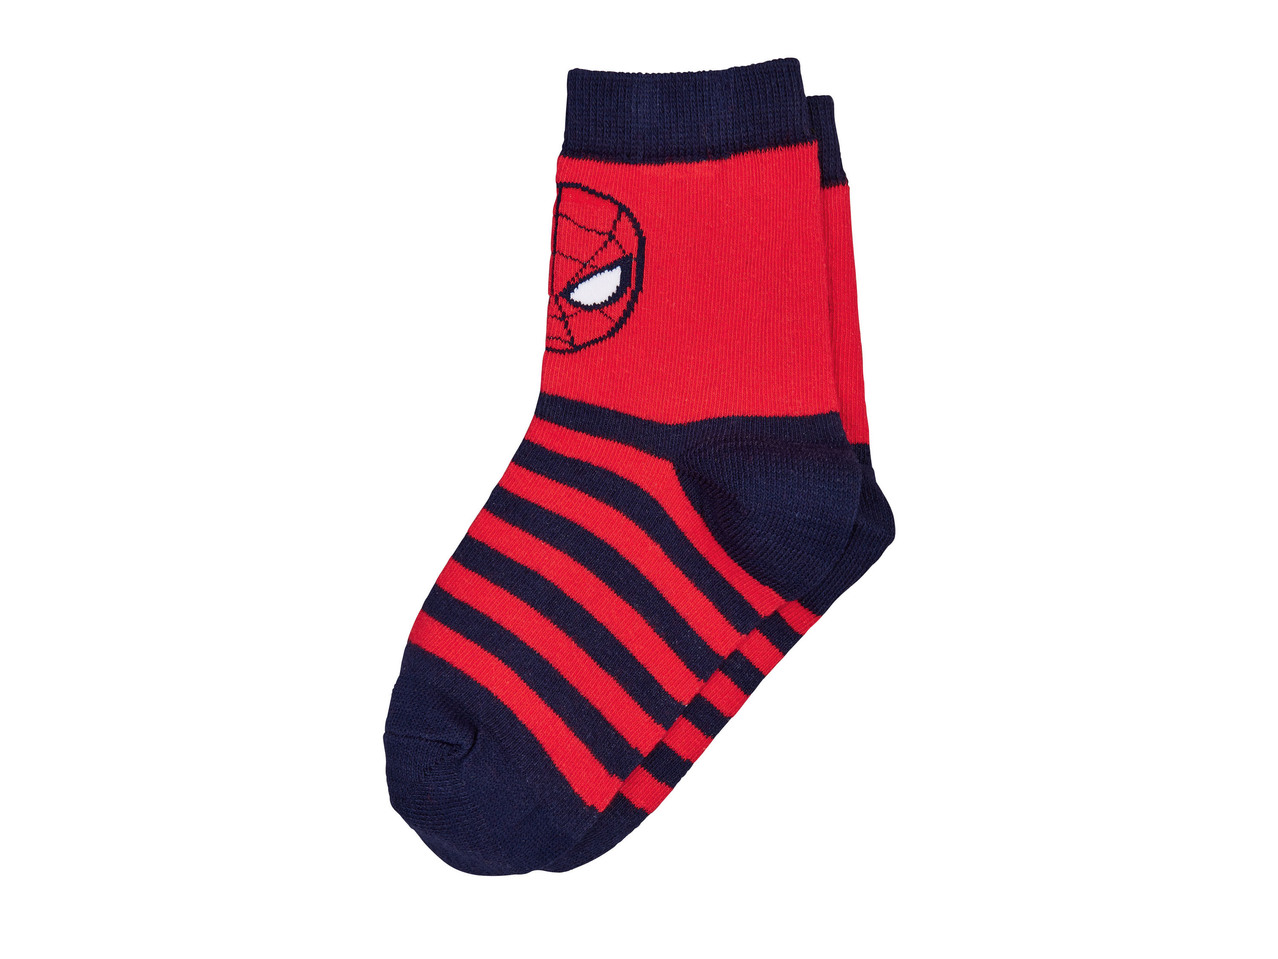 Boys' Socks "Spiderman, Star Wars, Batman, Cars, Paw Patrol, Minions"